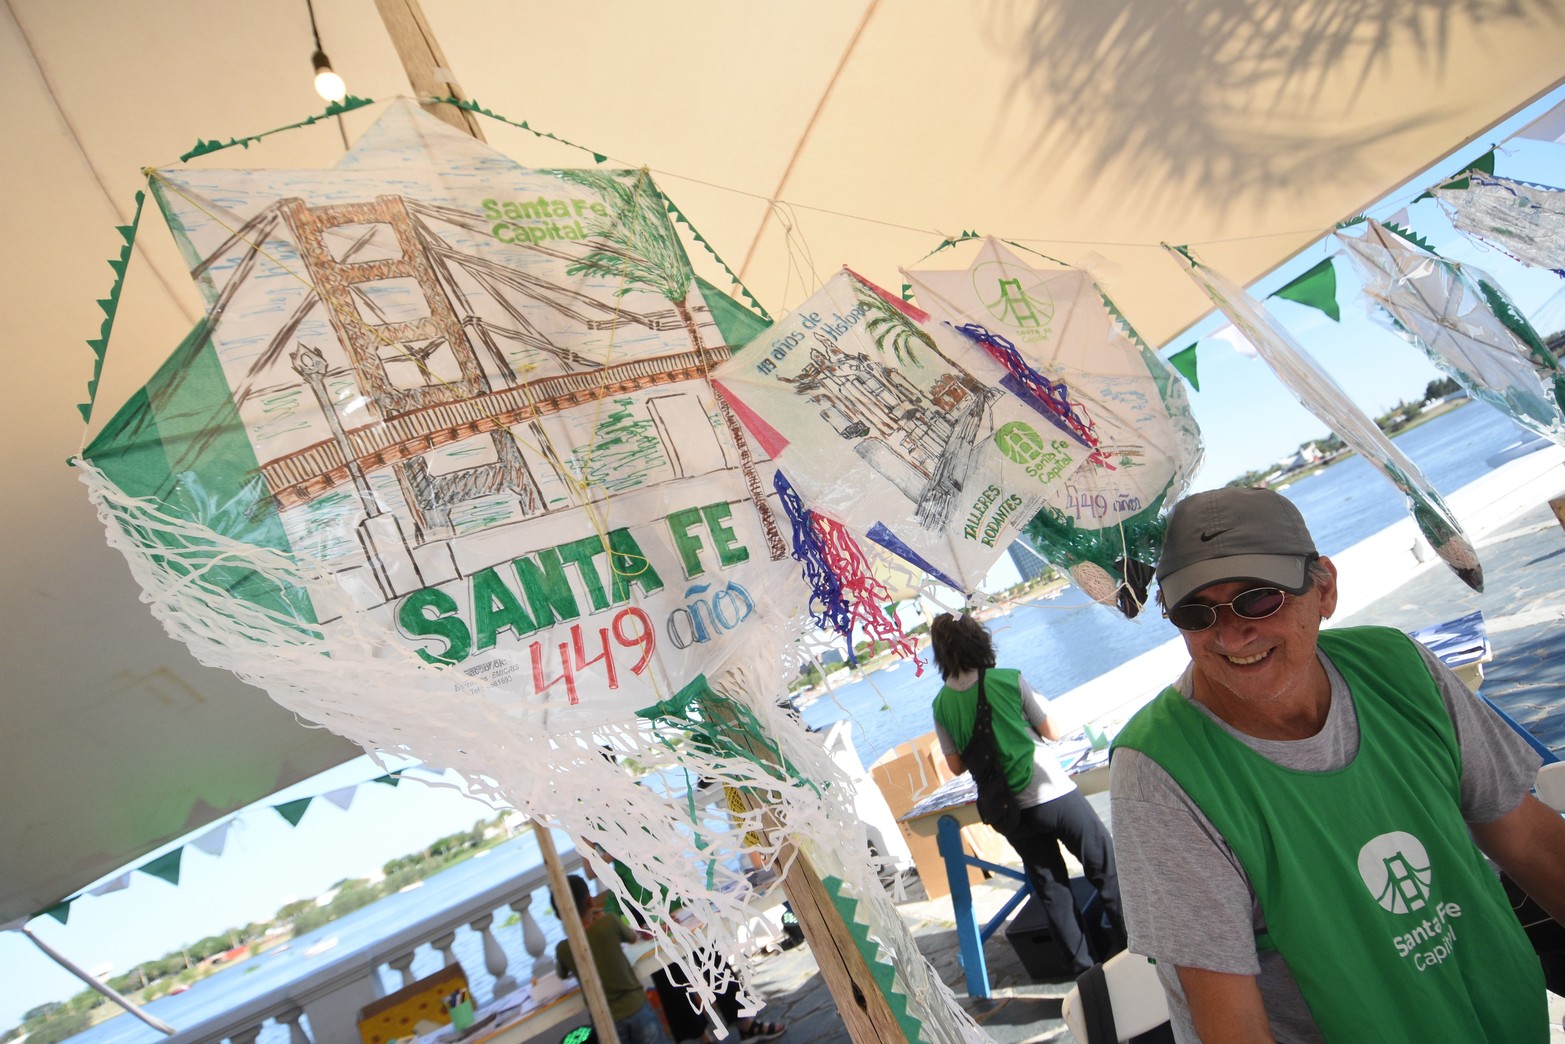 Este martes 15 de noviembre se desarrollan en la Costanera Oeste los festejos organizados por el municipio para celebrar el aniversario 449 de la ciudad de Santa Fe. Foto: Pablo Aguirre